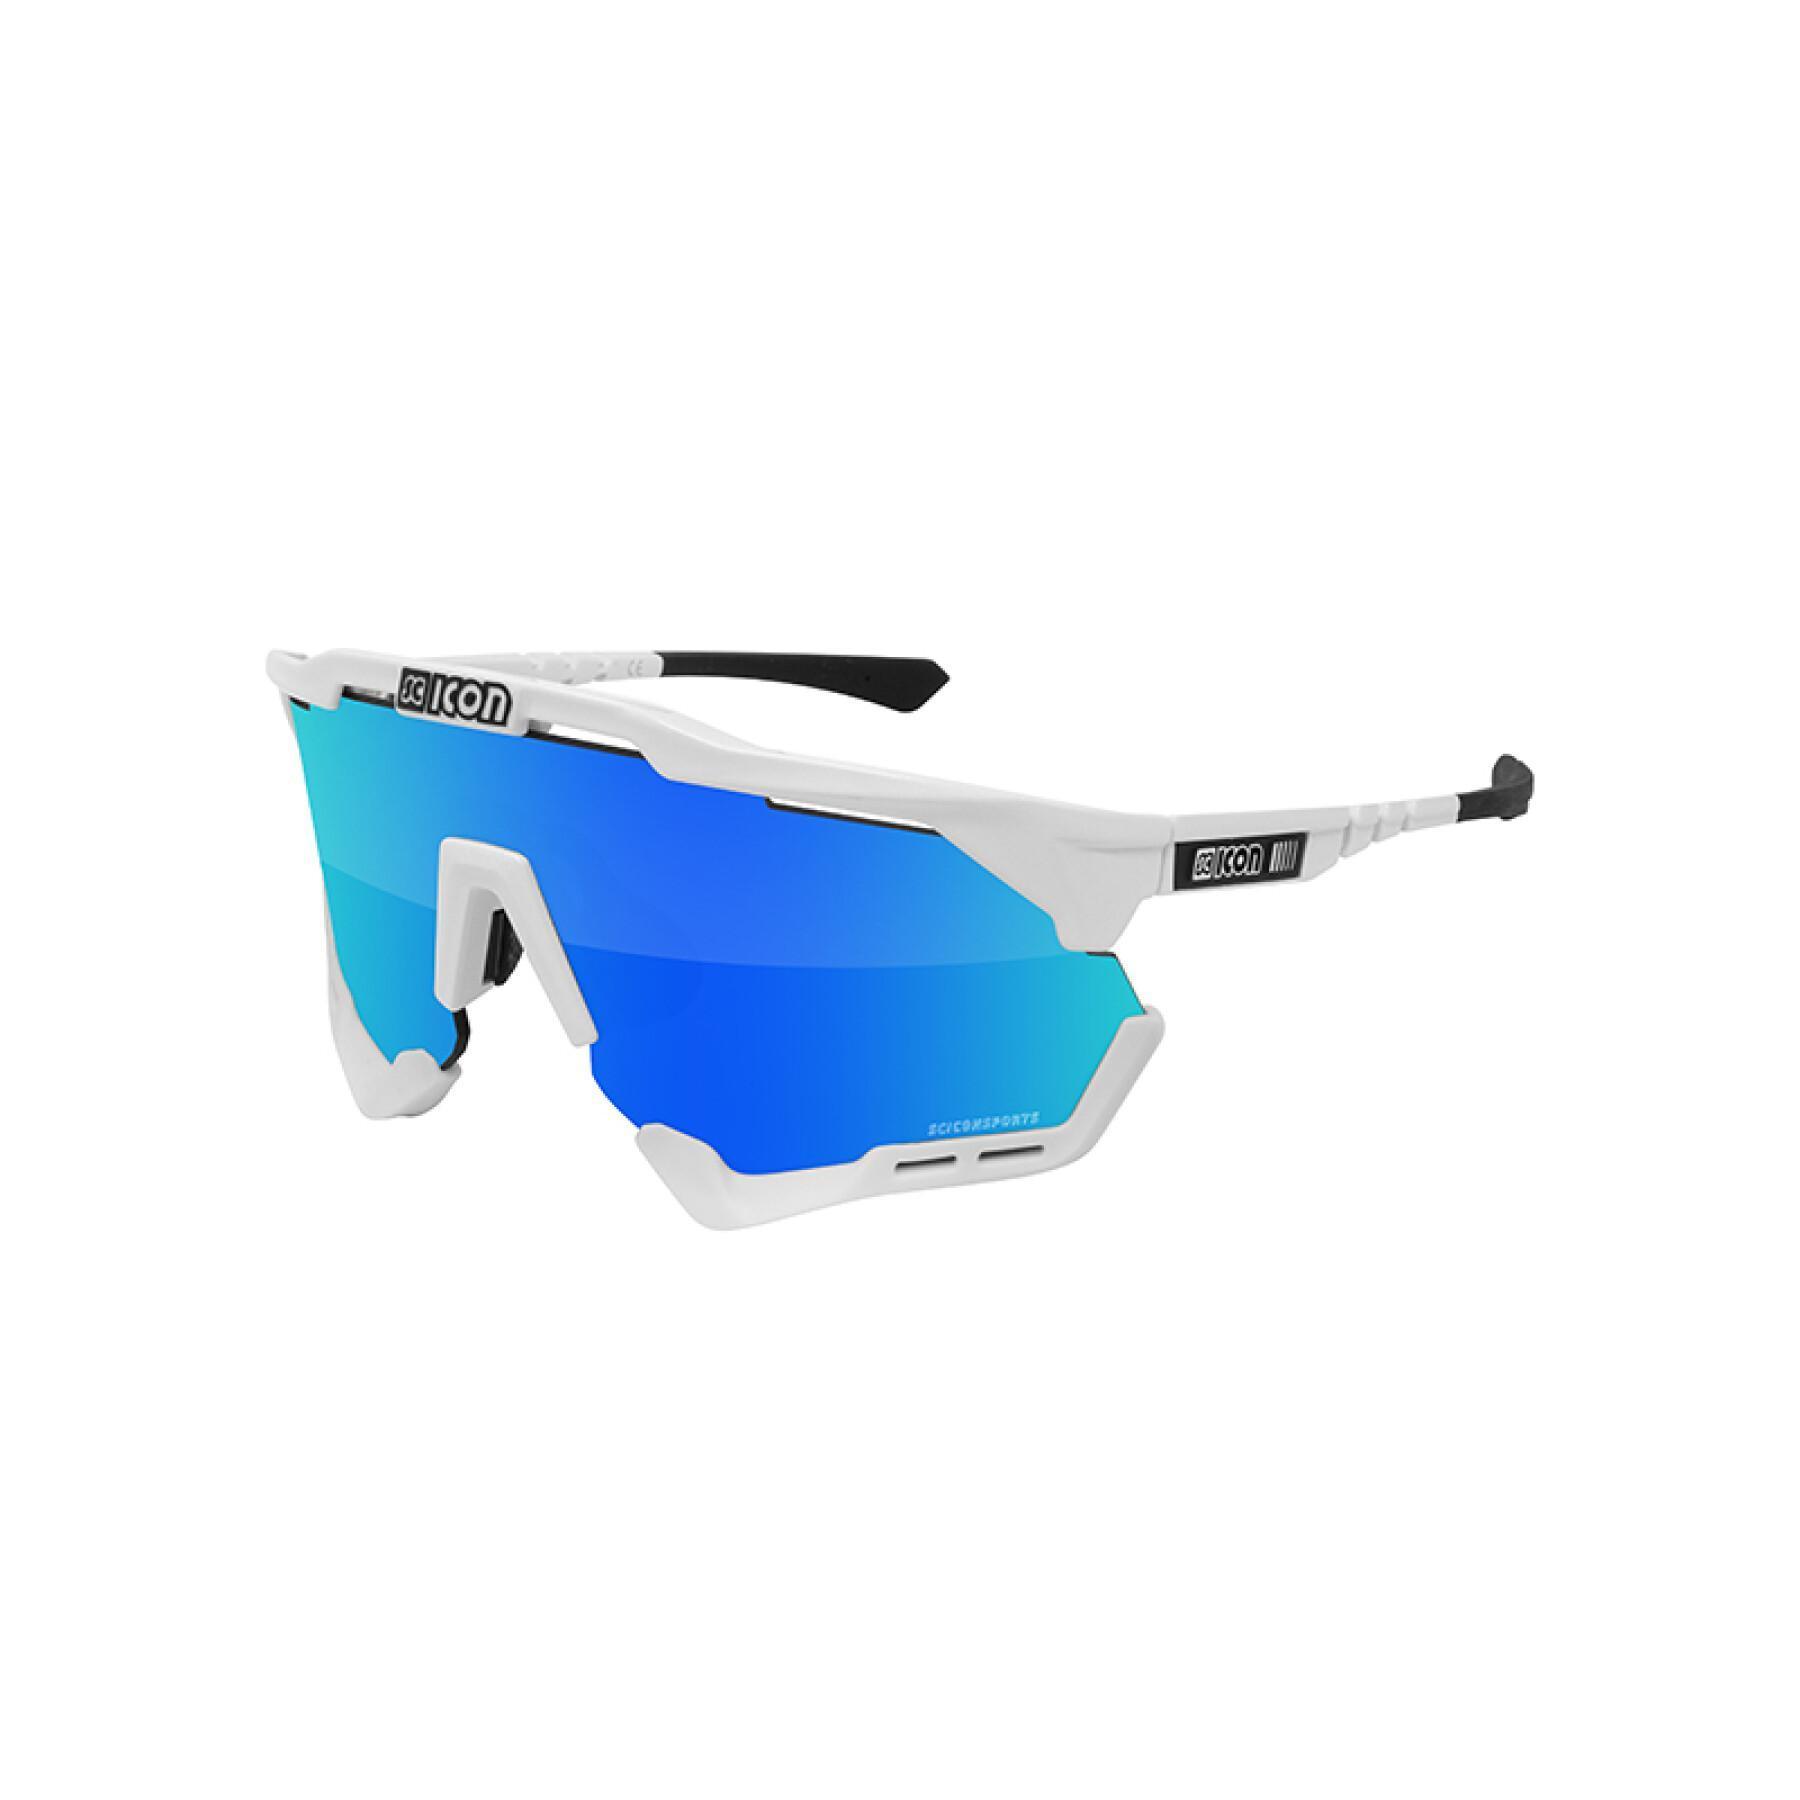 Glasses Scicon aeroshade xl scnpp verre multi-reflet bleues